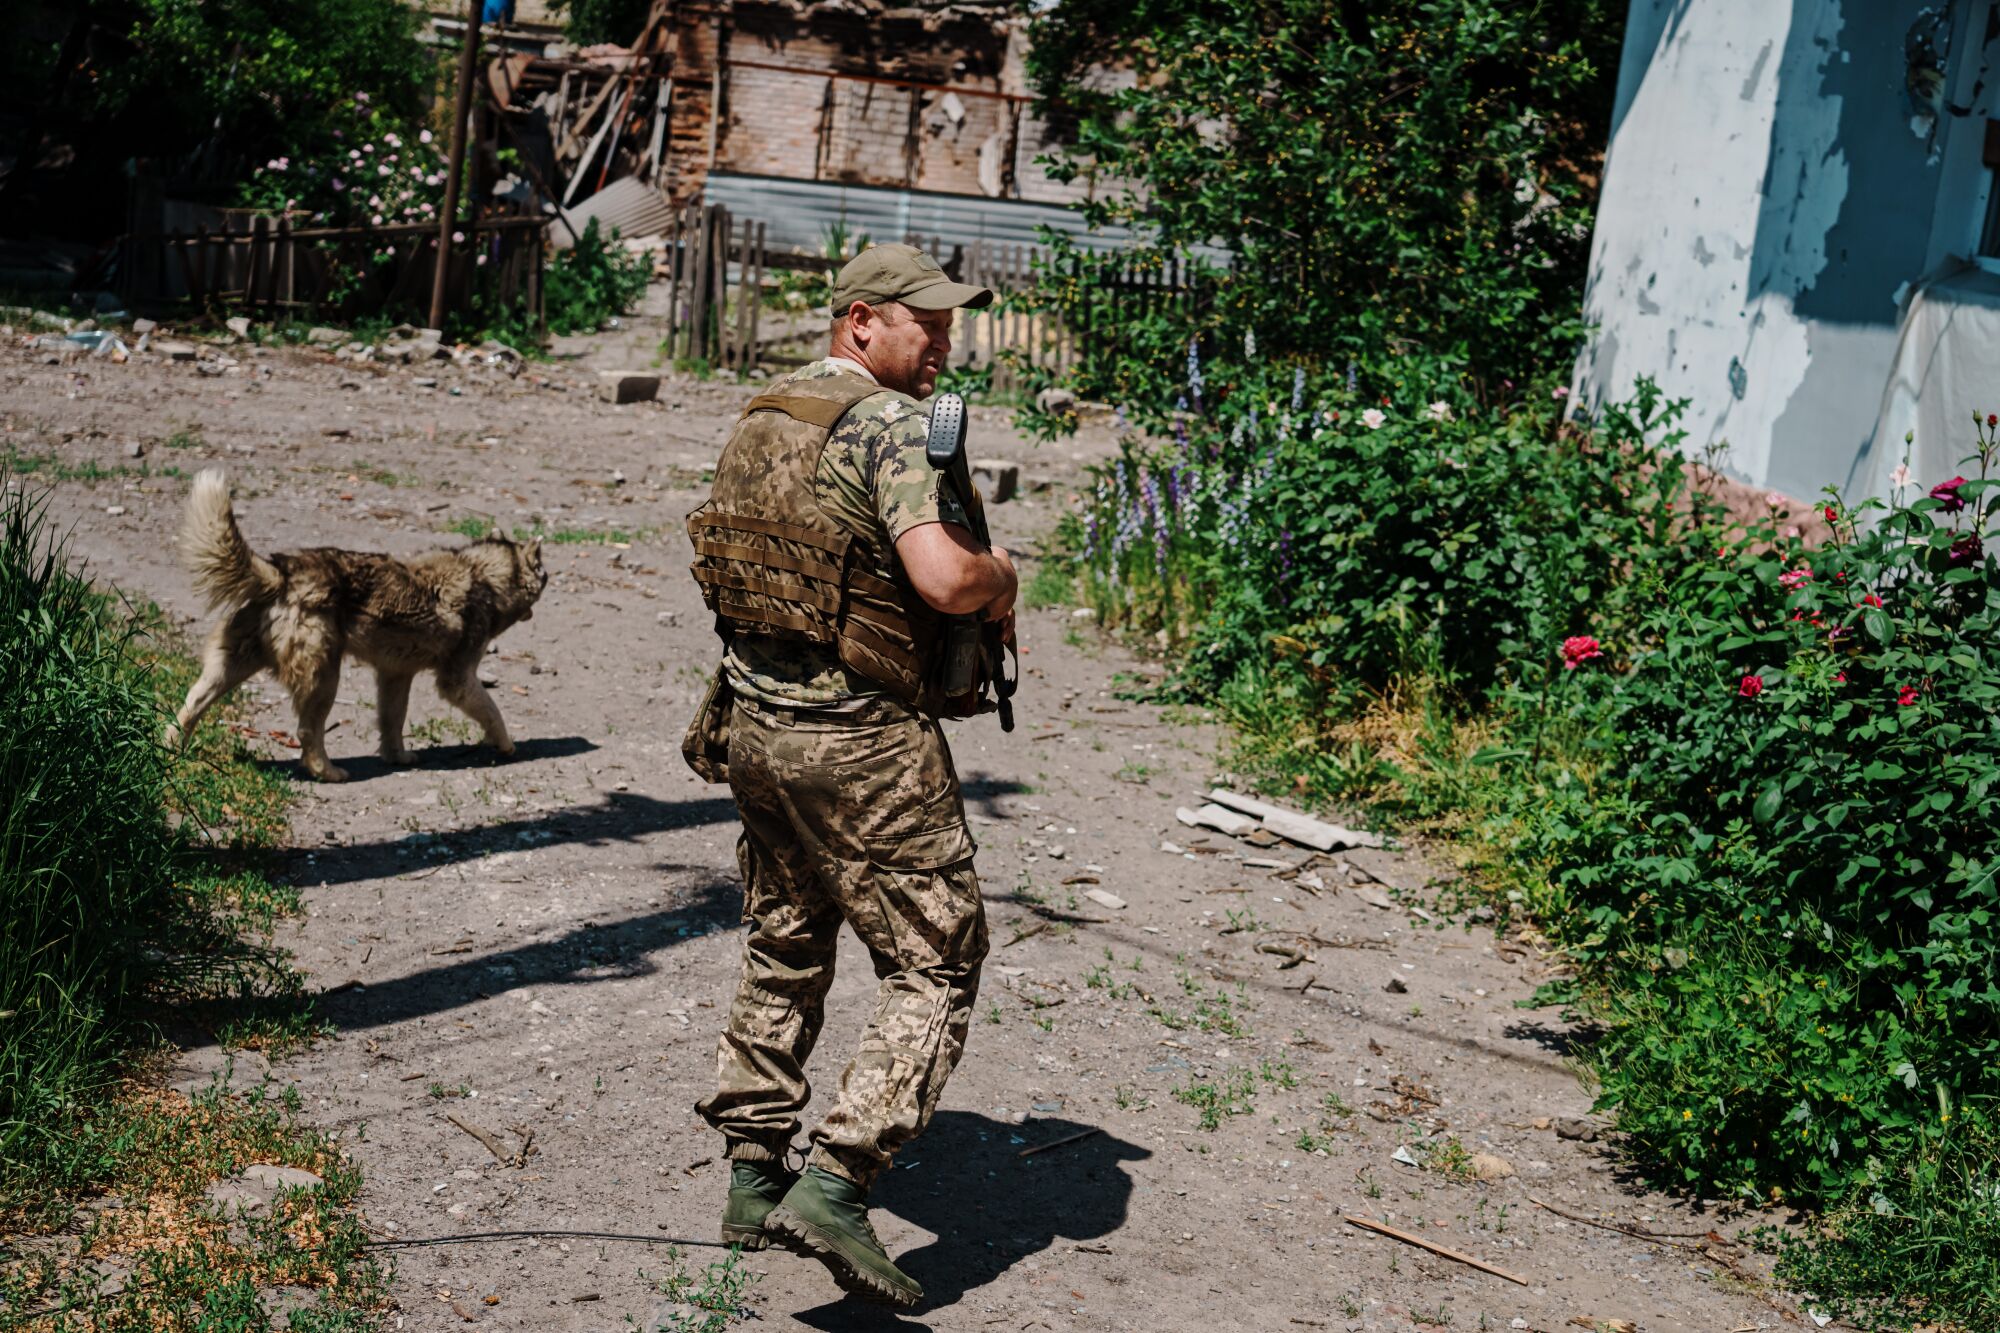 Ukrainian soldier inspect a neighborhood.